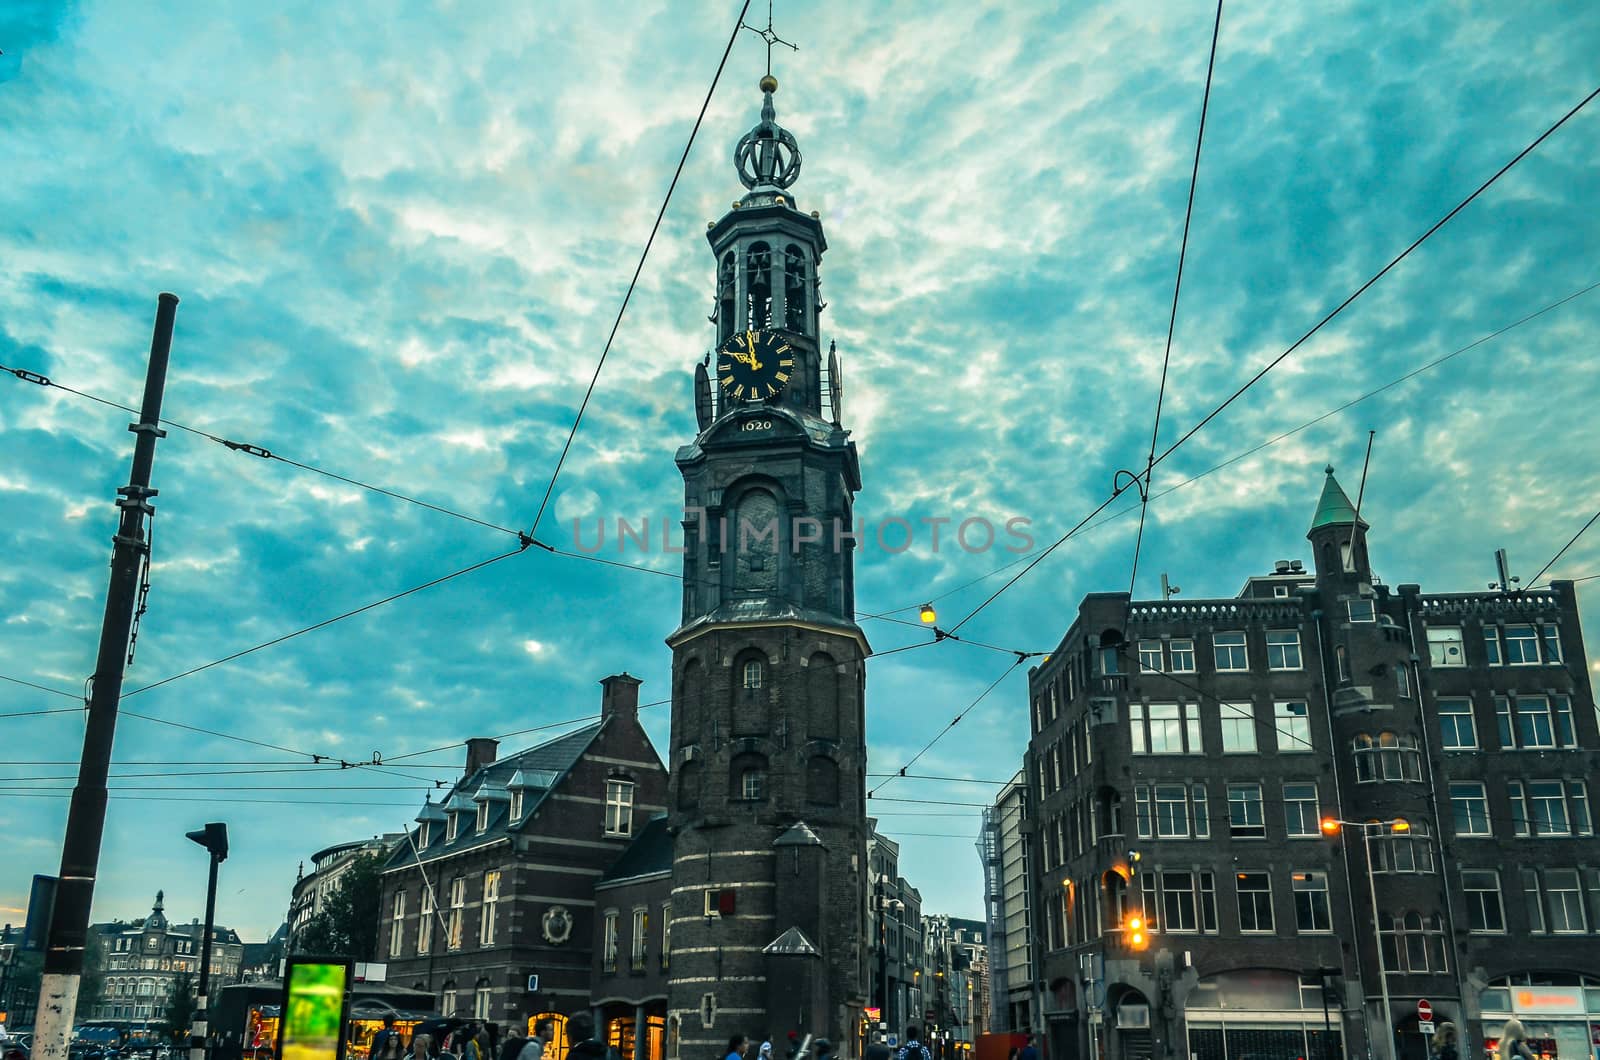 Munttoren clock tower to the rear at Muntplein, Amsterdam, Netherlands (Holland)